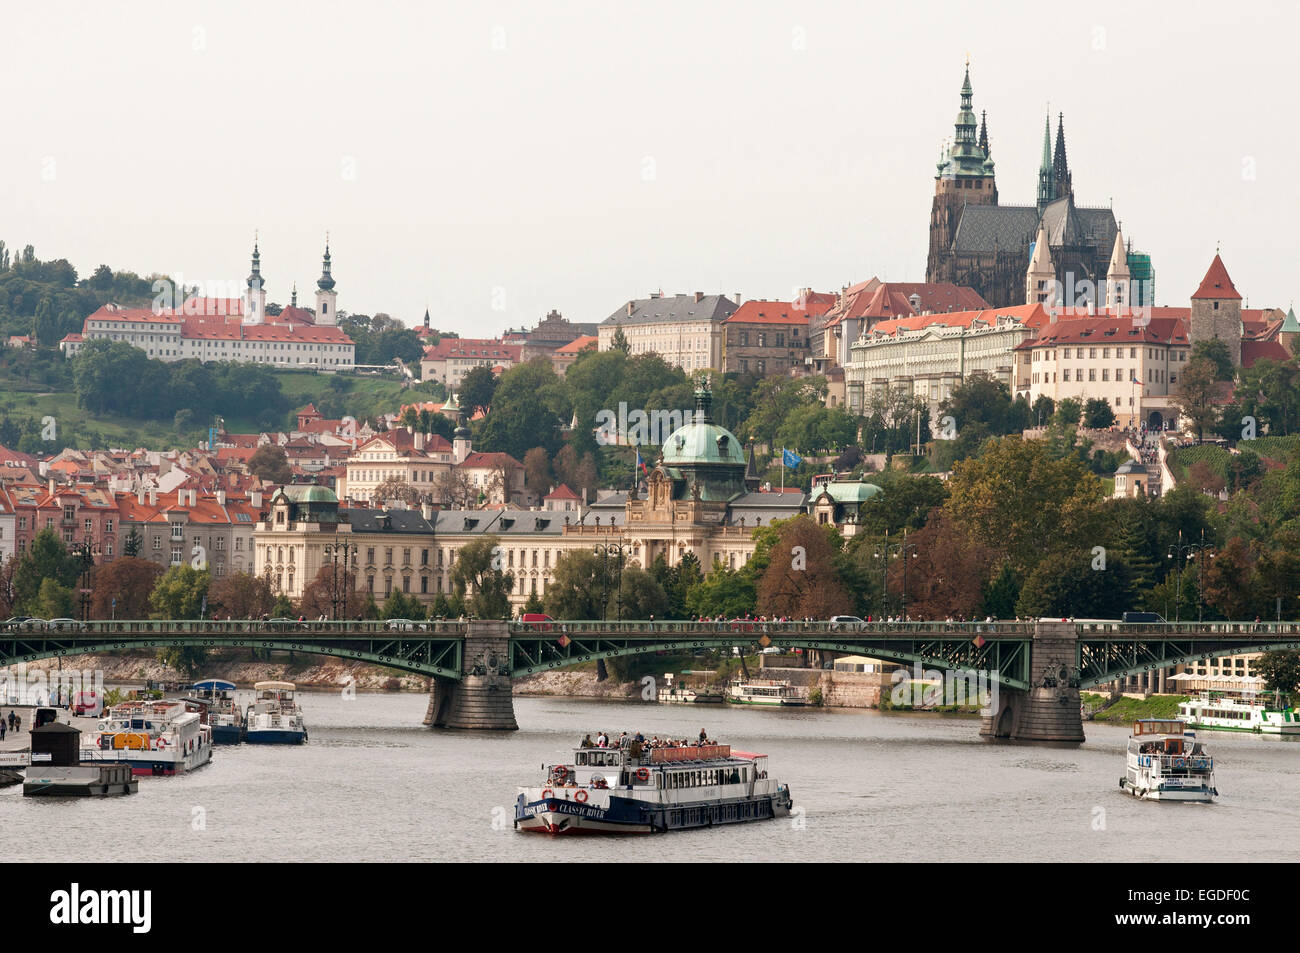 Vue du château de Prague, la cathédrale Saint-Guy et monastère capucin, Prague, République Tchèque, Europe Banque D'Images